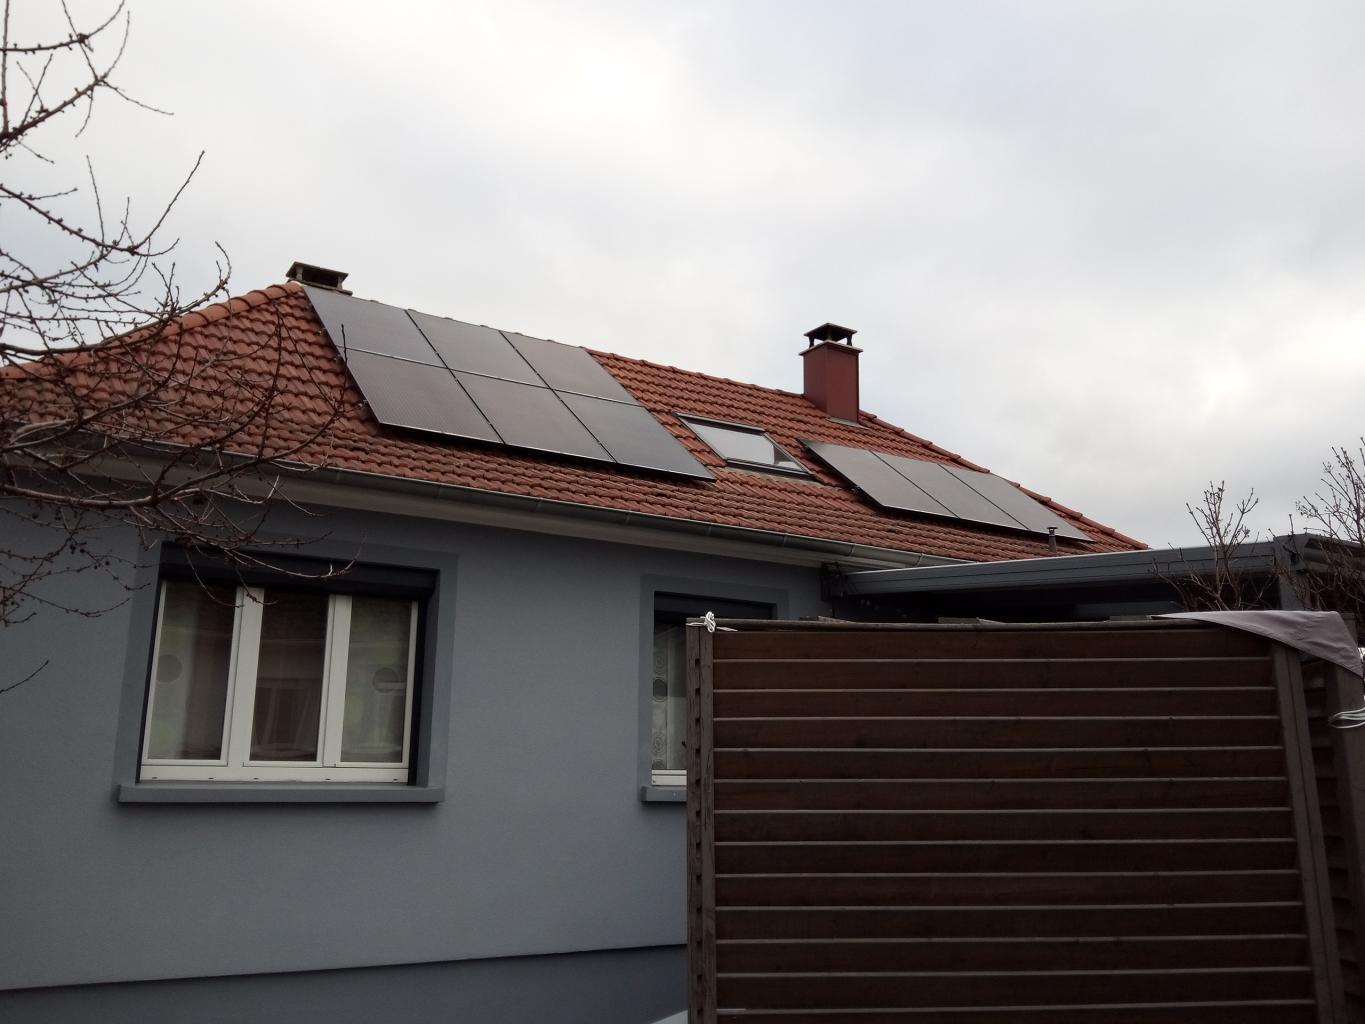 Panneaux photovoltaïques sur toiture